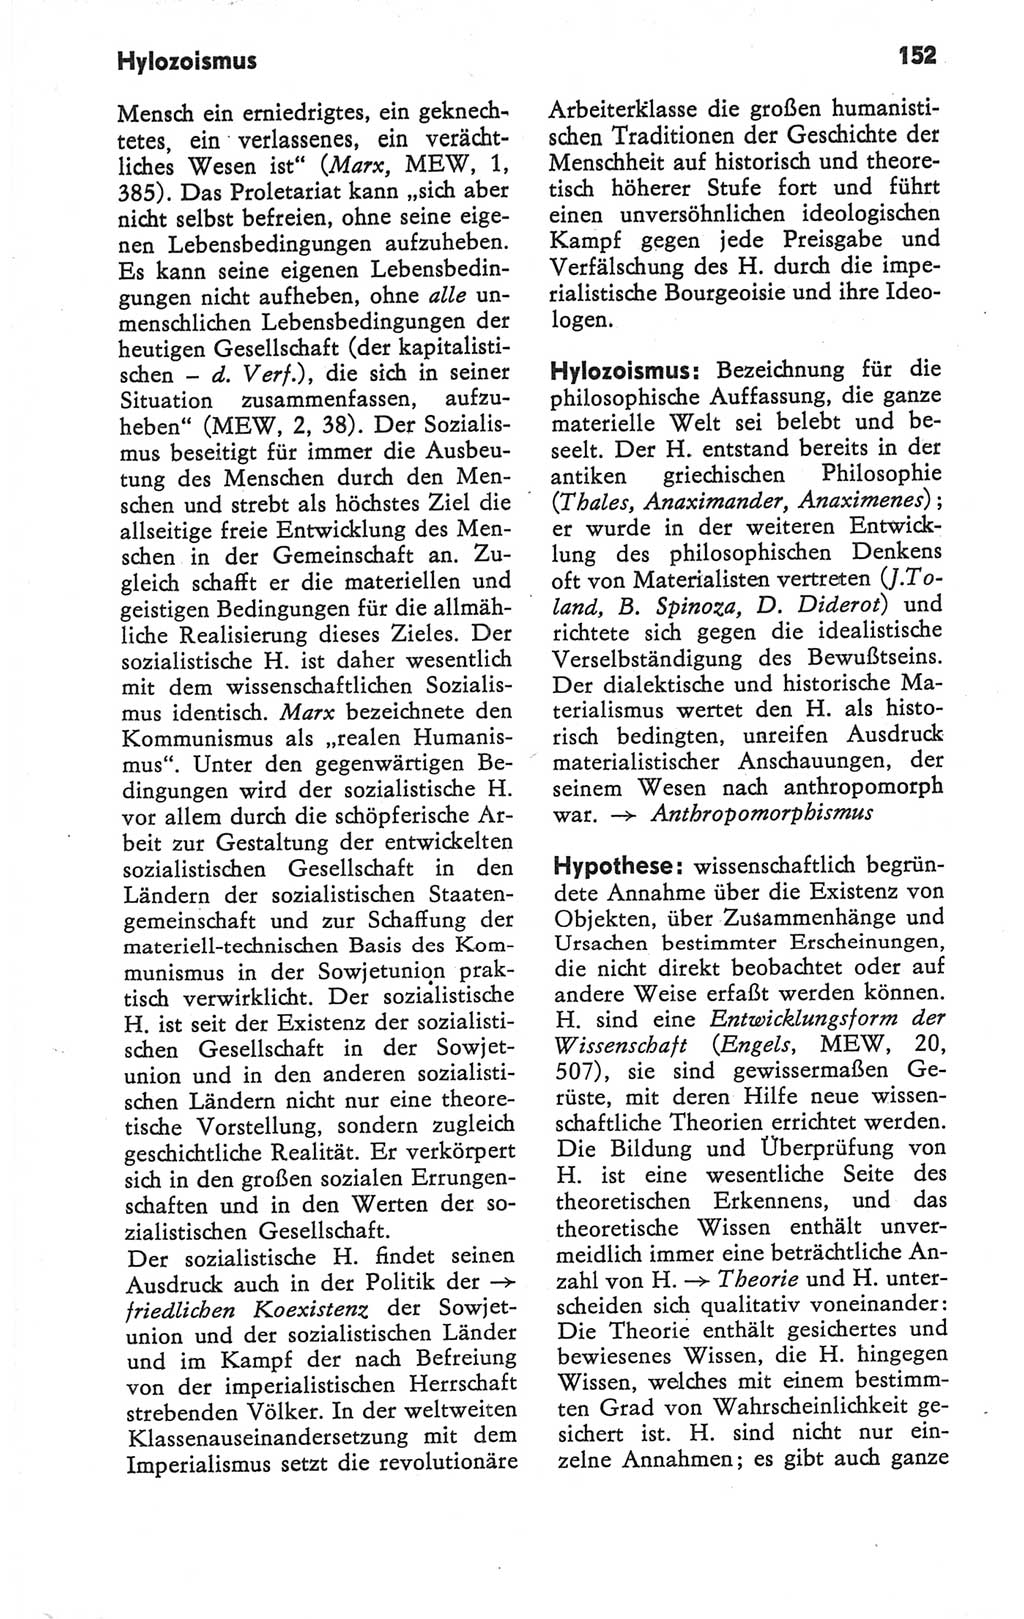 Kleines Wörterbuch der marxistisch-leninistischen Philosophie [Deutsche Demokratische Republik (DDR)] 1979, Seite 152 (Kl. Wb. ML Phil. DDR 1979, S. 152)